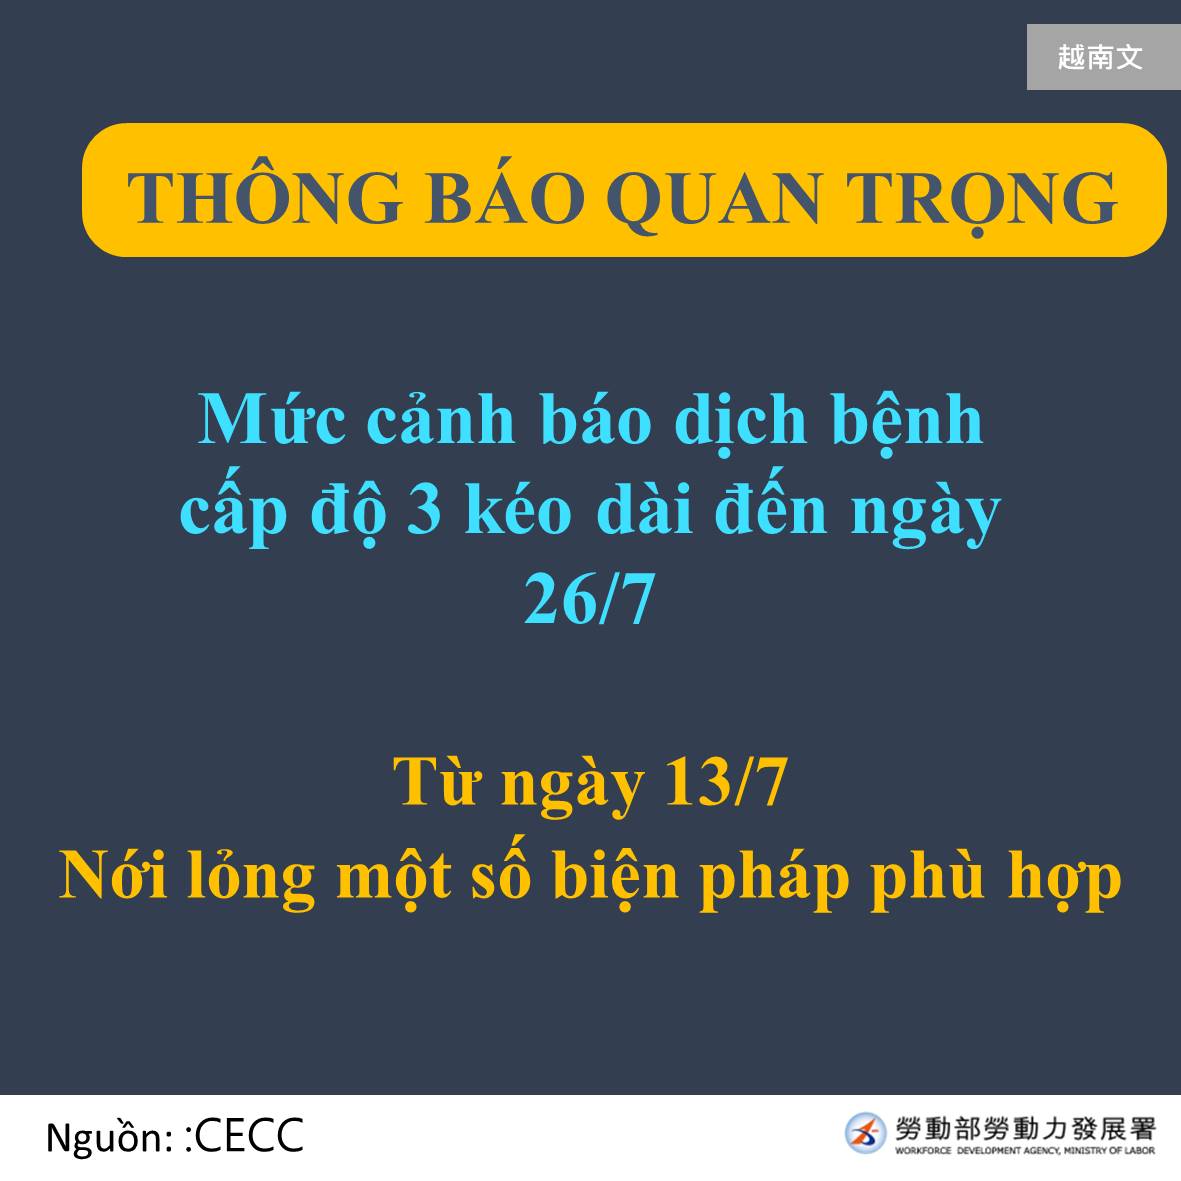 重要公告三級警戒延長至7月26日-越南文.JPG